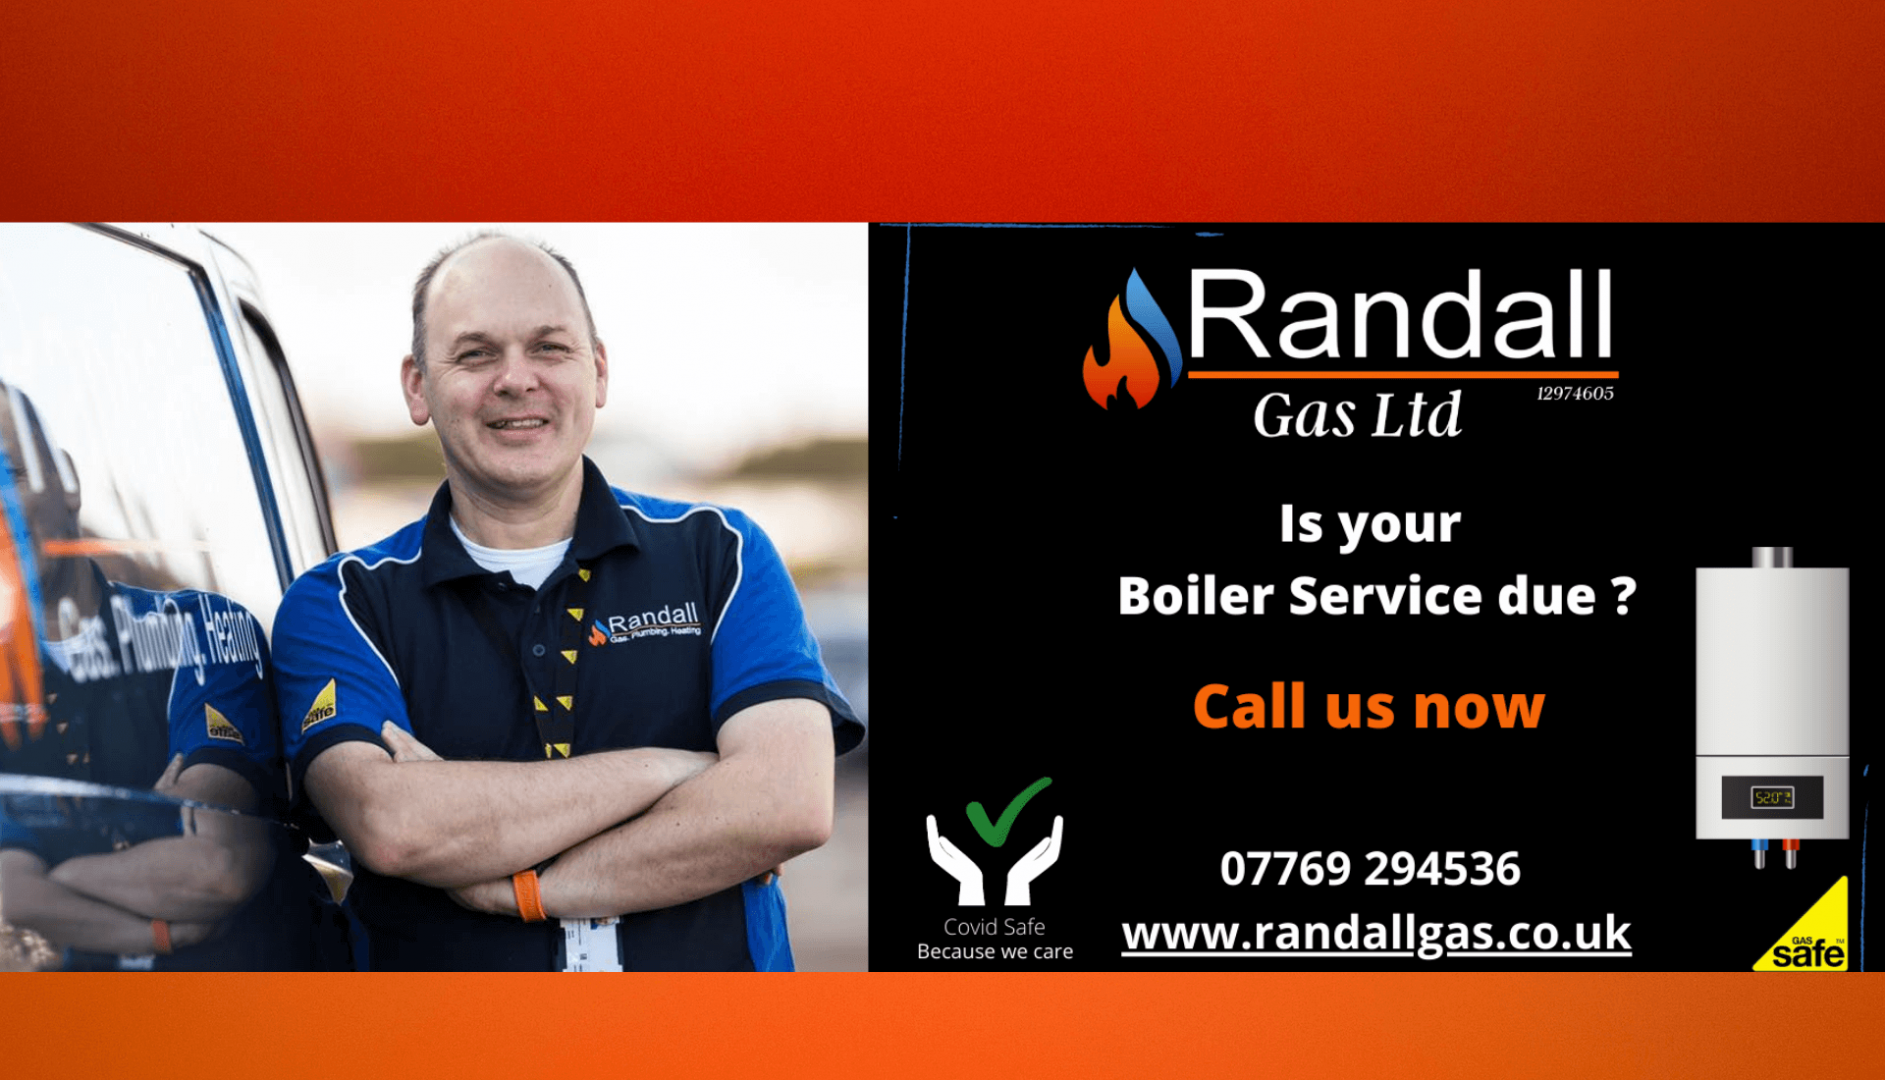 Randall Gas Ltd in Cheltenham